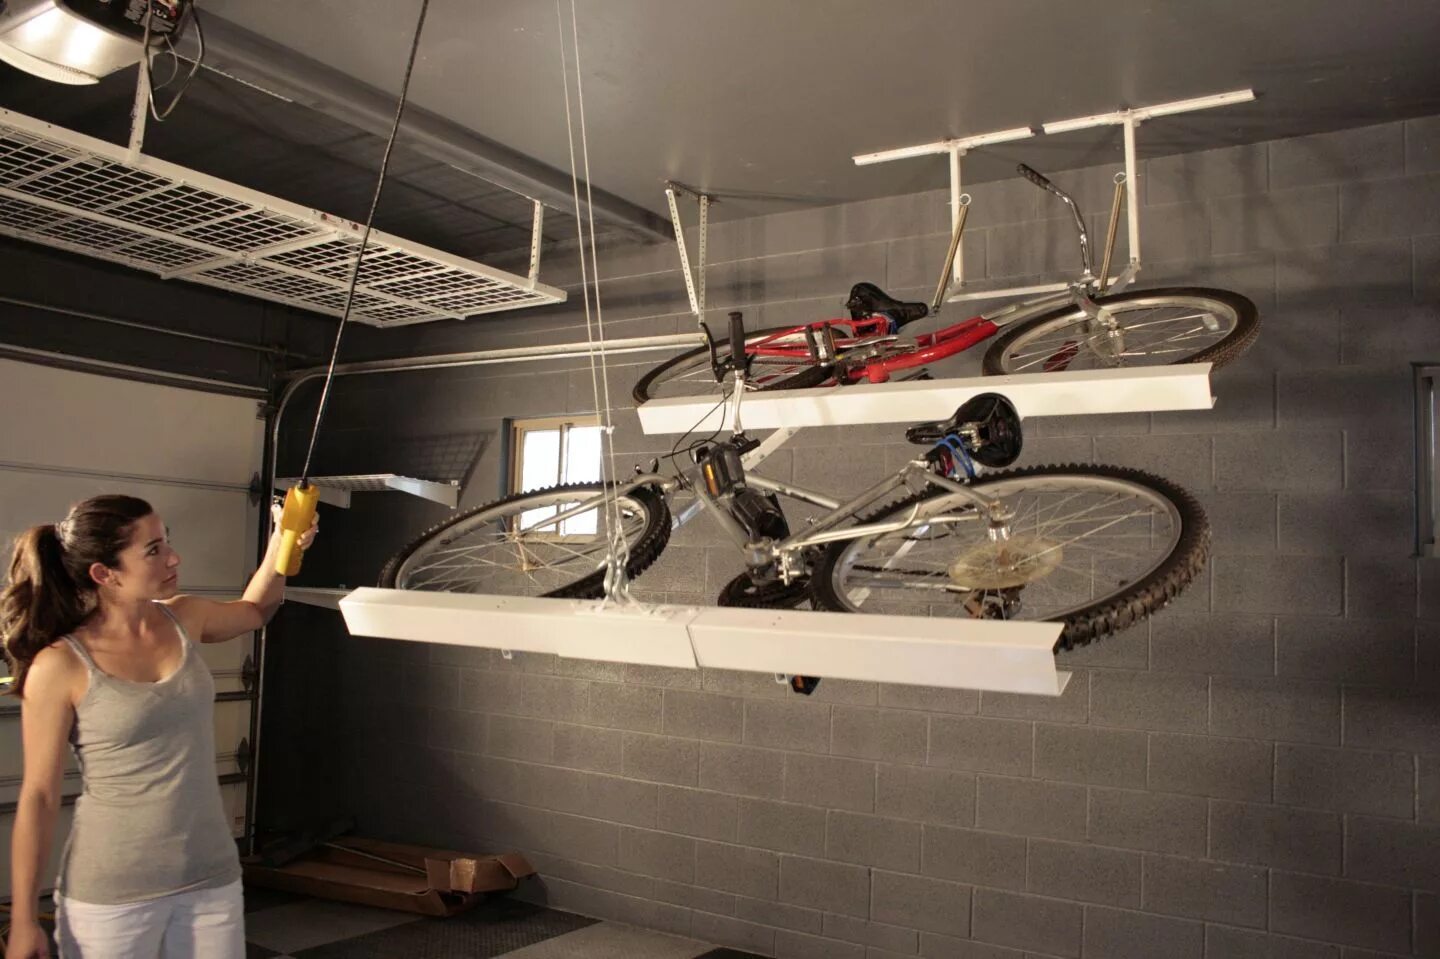 Гараж для велосипеда. Идеи хранения велосипеда в гараже. Потолочный подвес для велосипеда в гараж. Интересные вещи для гаража. Гениальные идеи гениальных людей